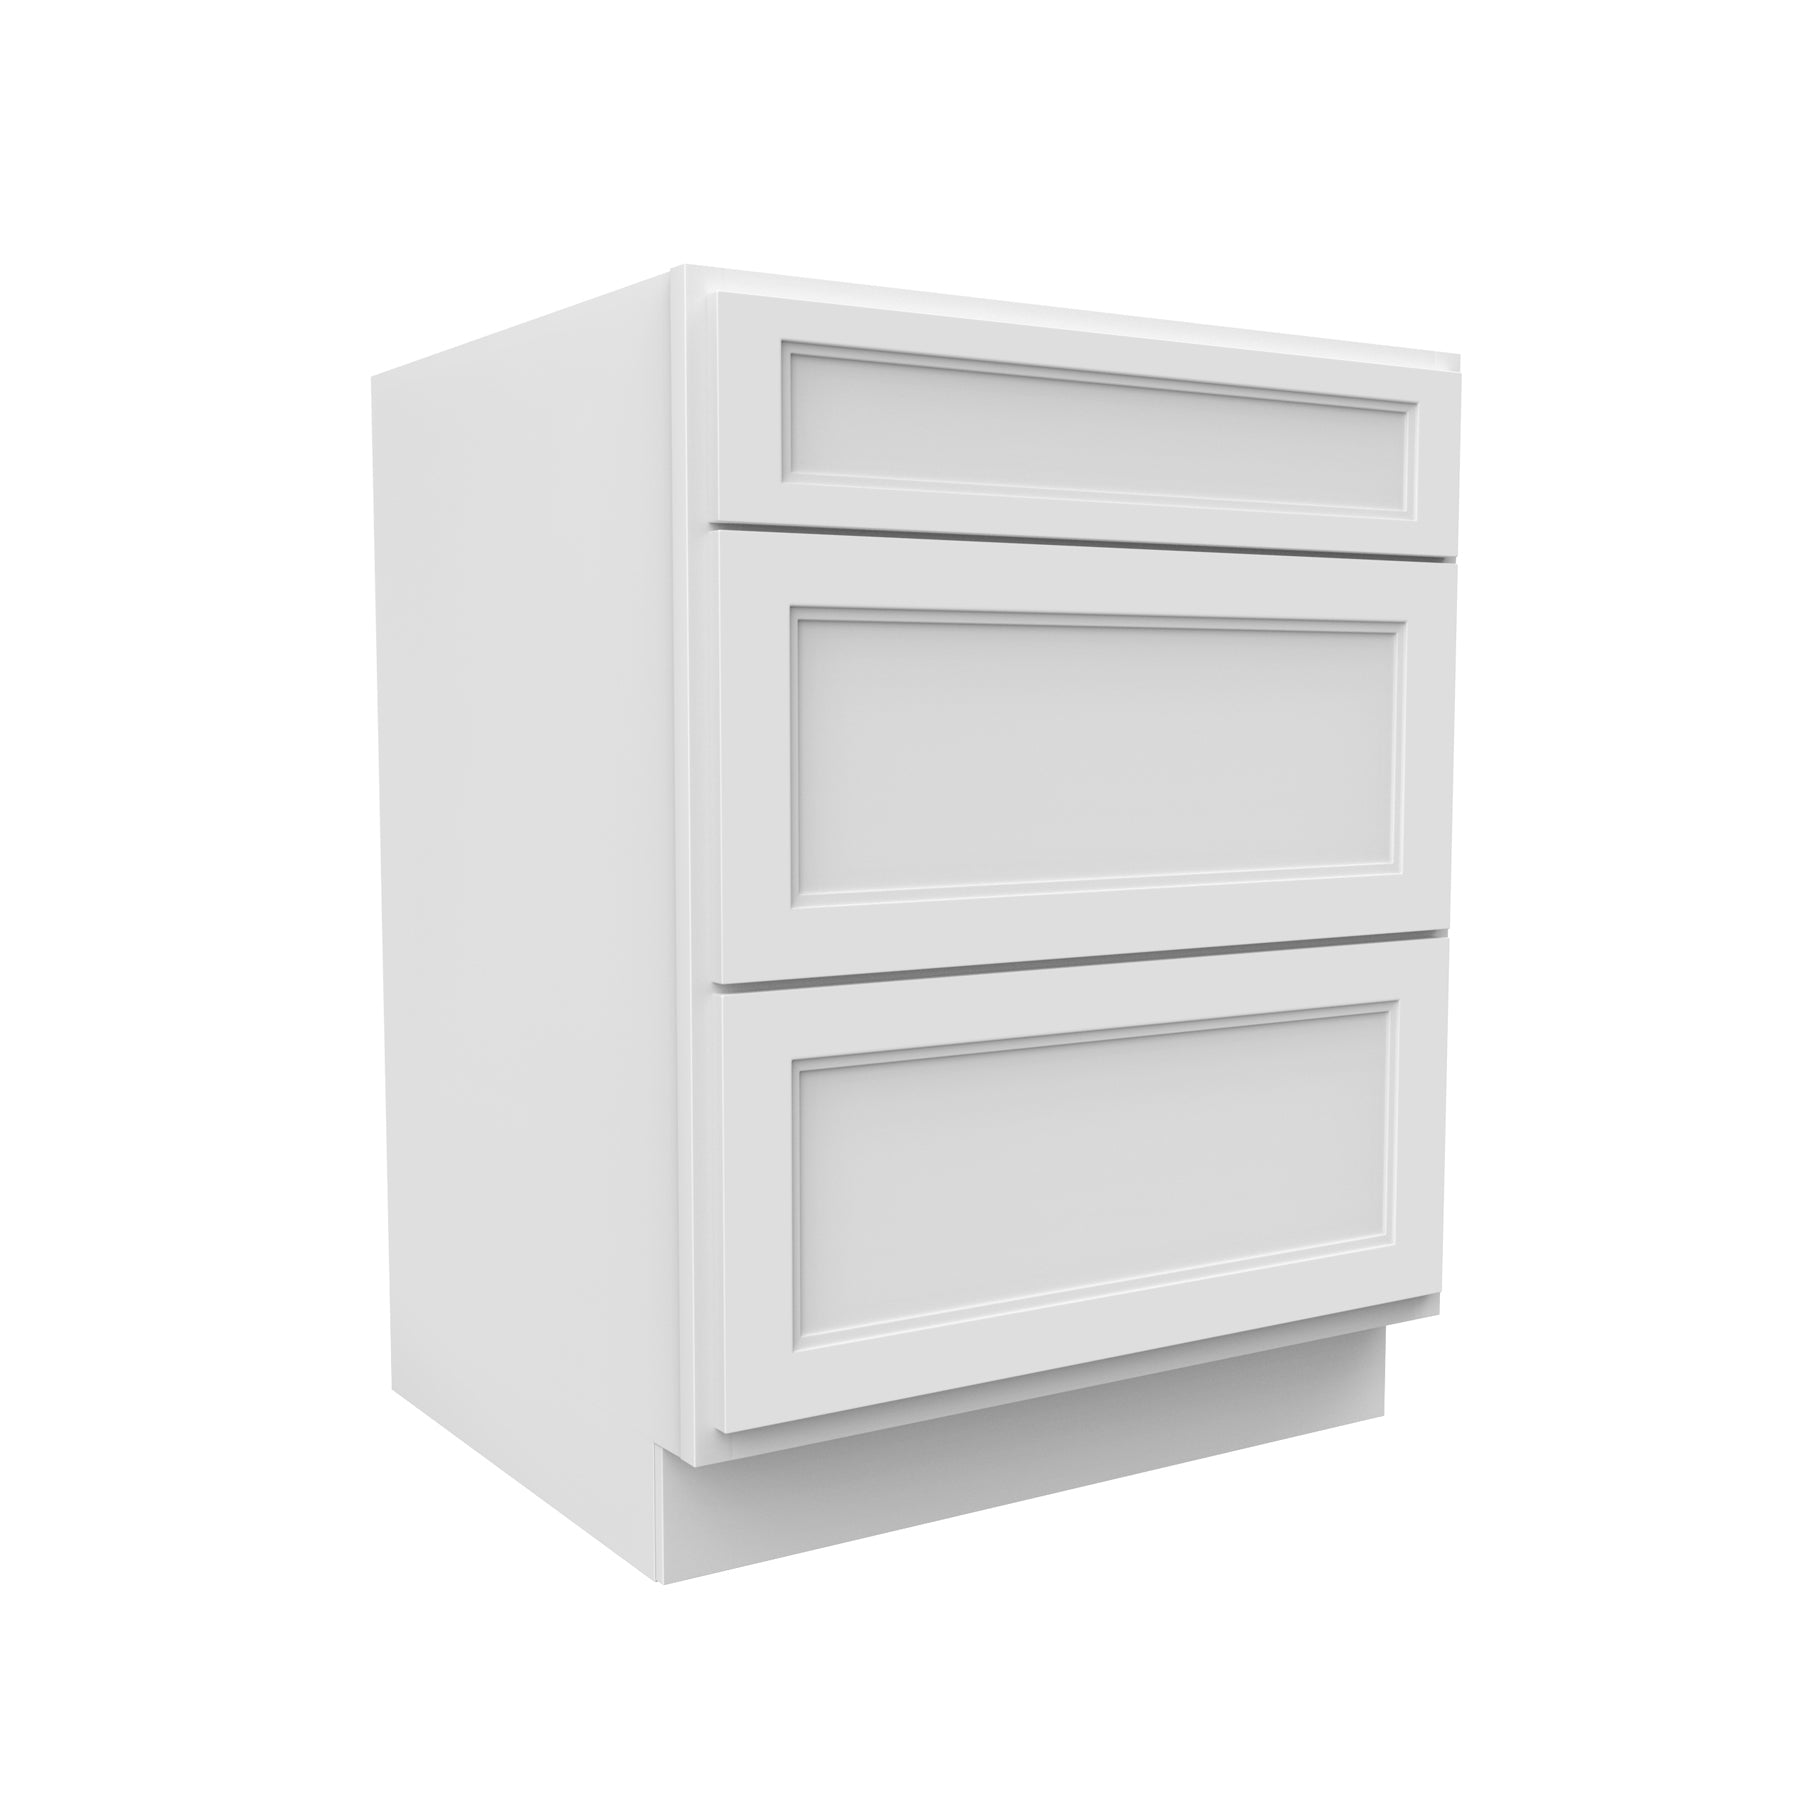 Fashion White - 3 Drawer Base Cabinet | 27"W x 34.5"H x 24"D